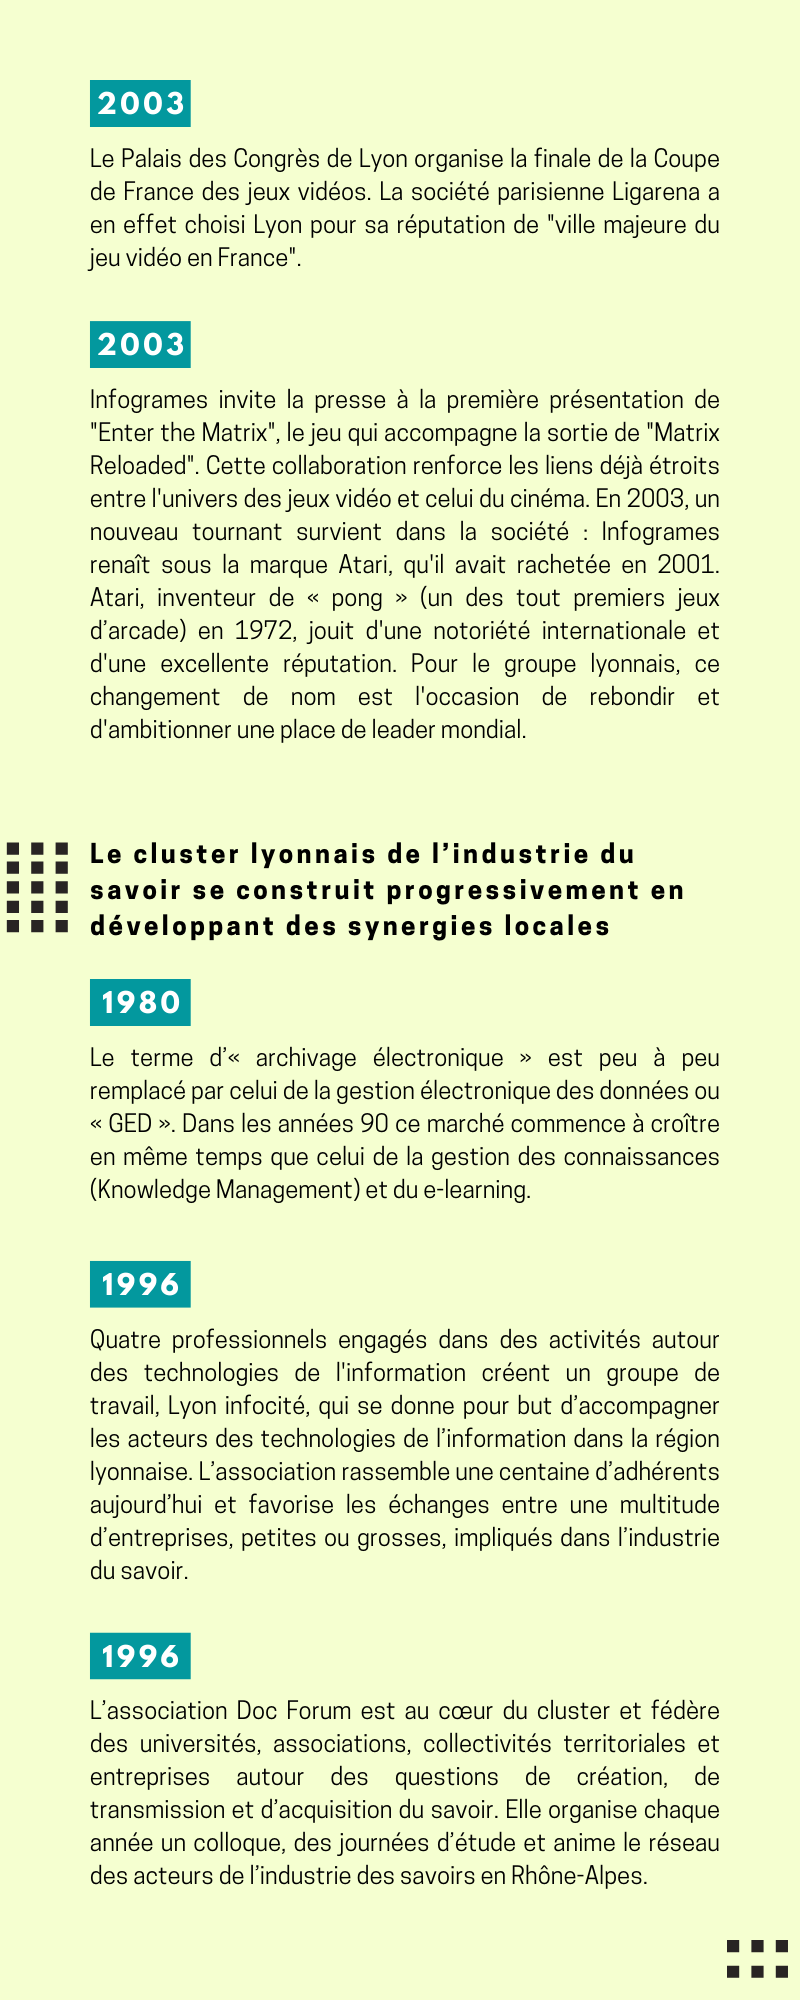 Chronologie du cluster lyonnais de l'industrie du savoir de 1980 à 1996